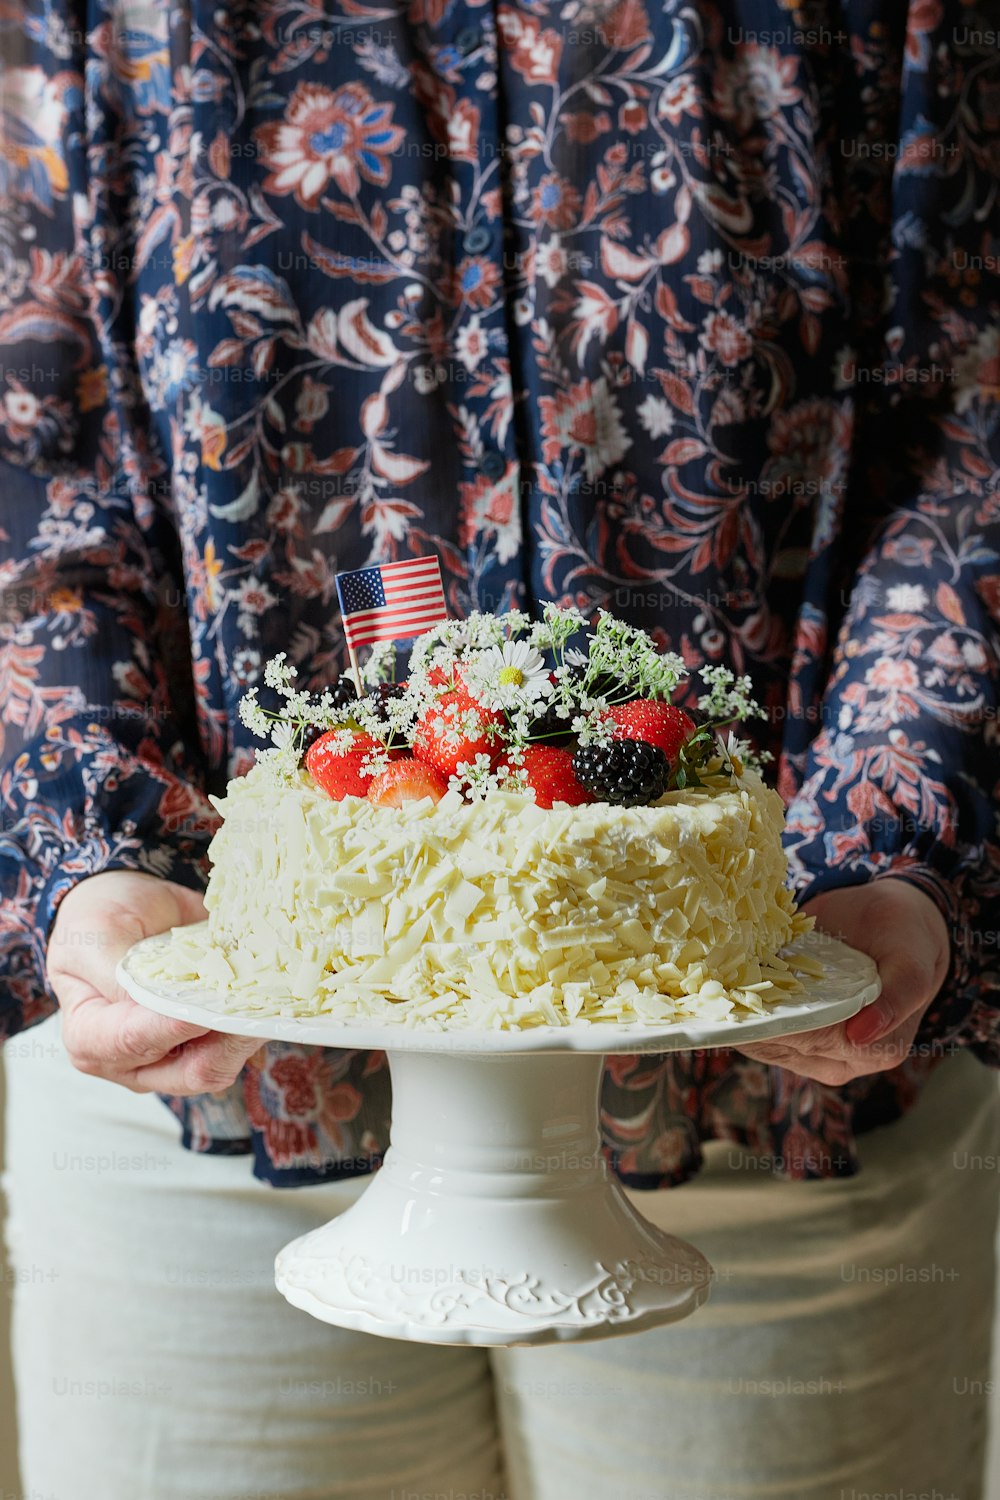 Una persona sosteniendo un pastel con fresas en la parte superior